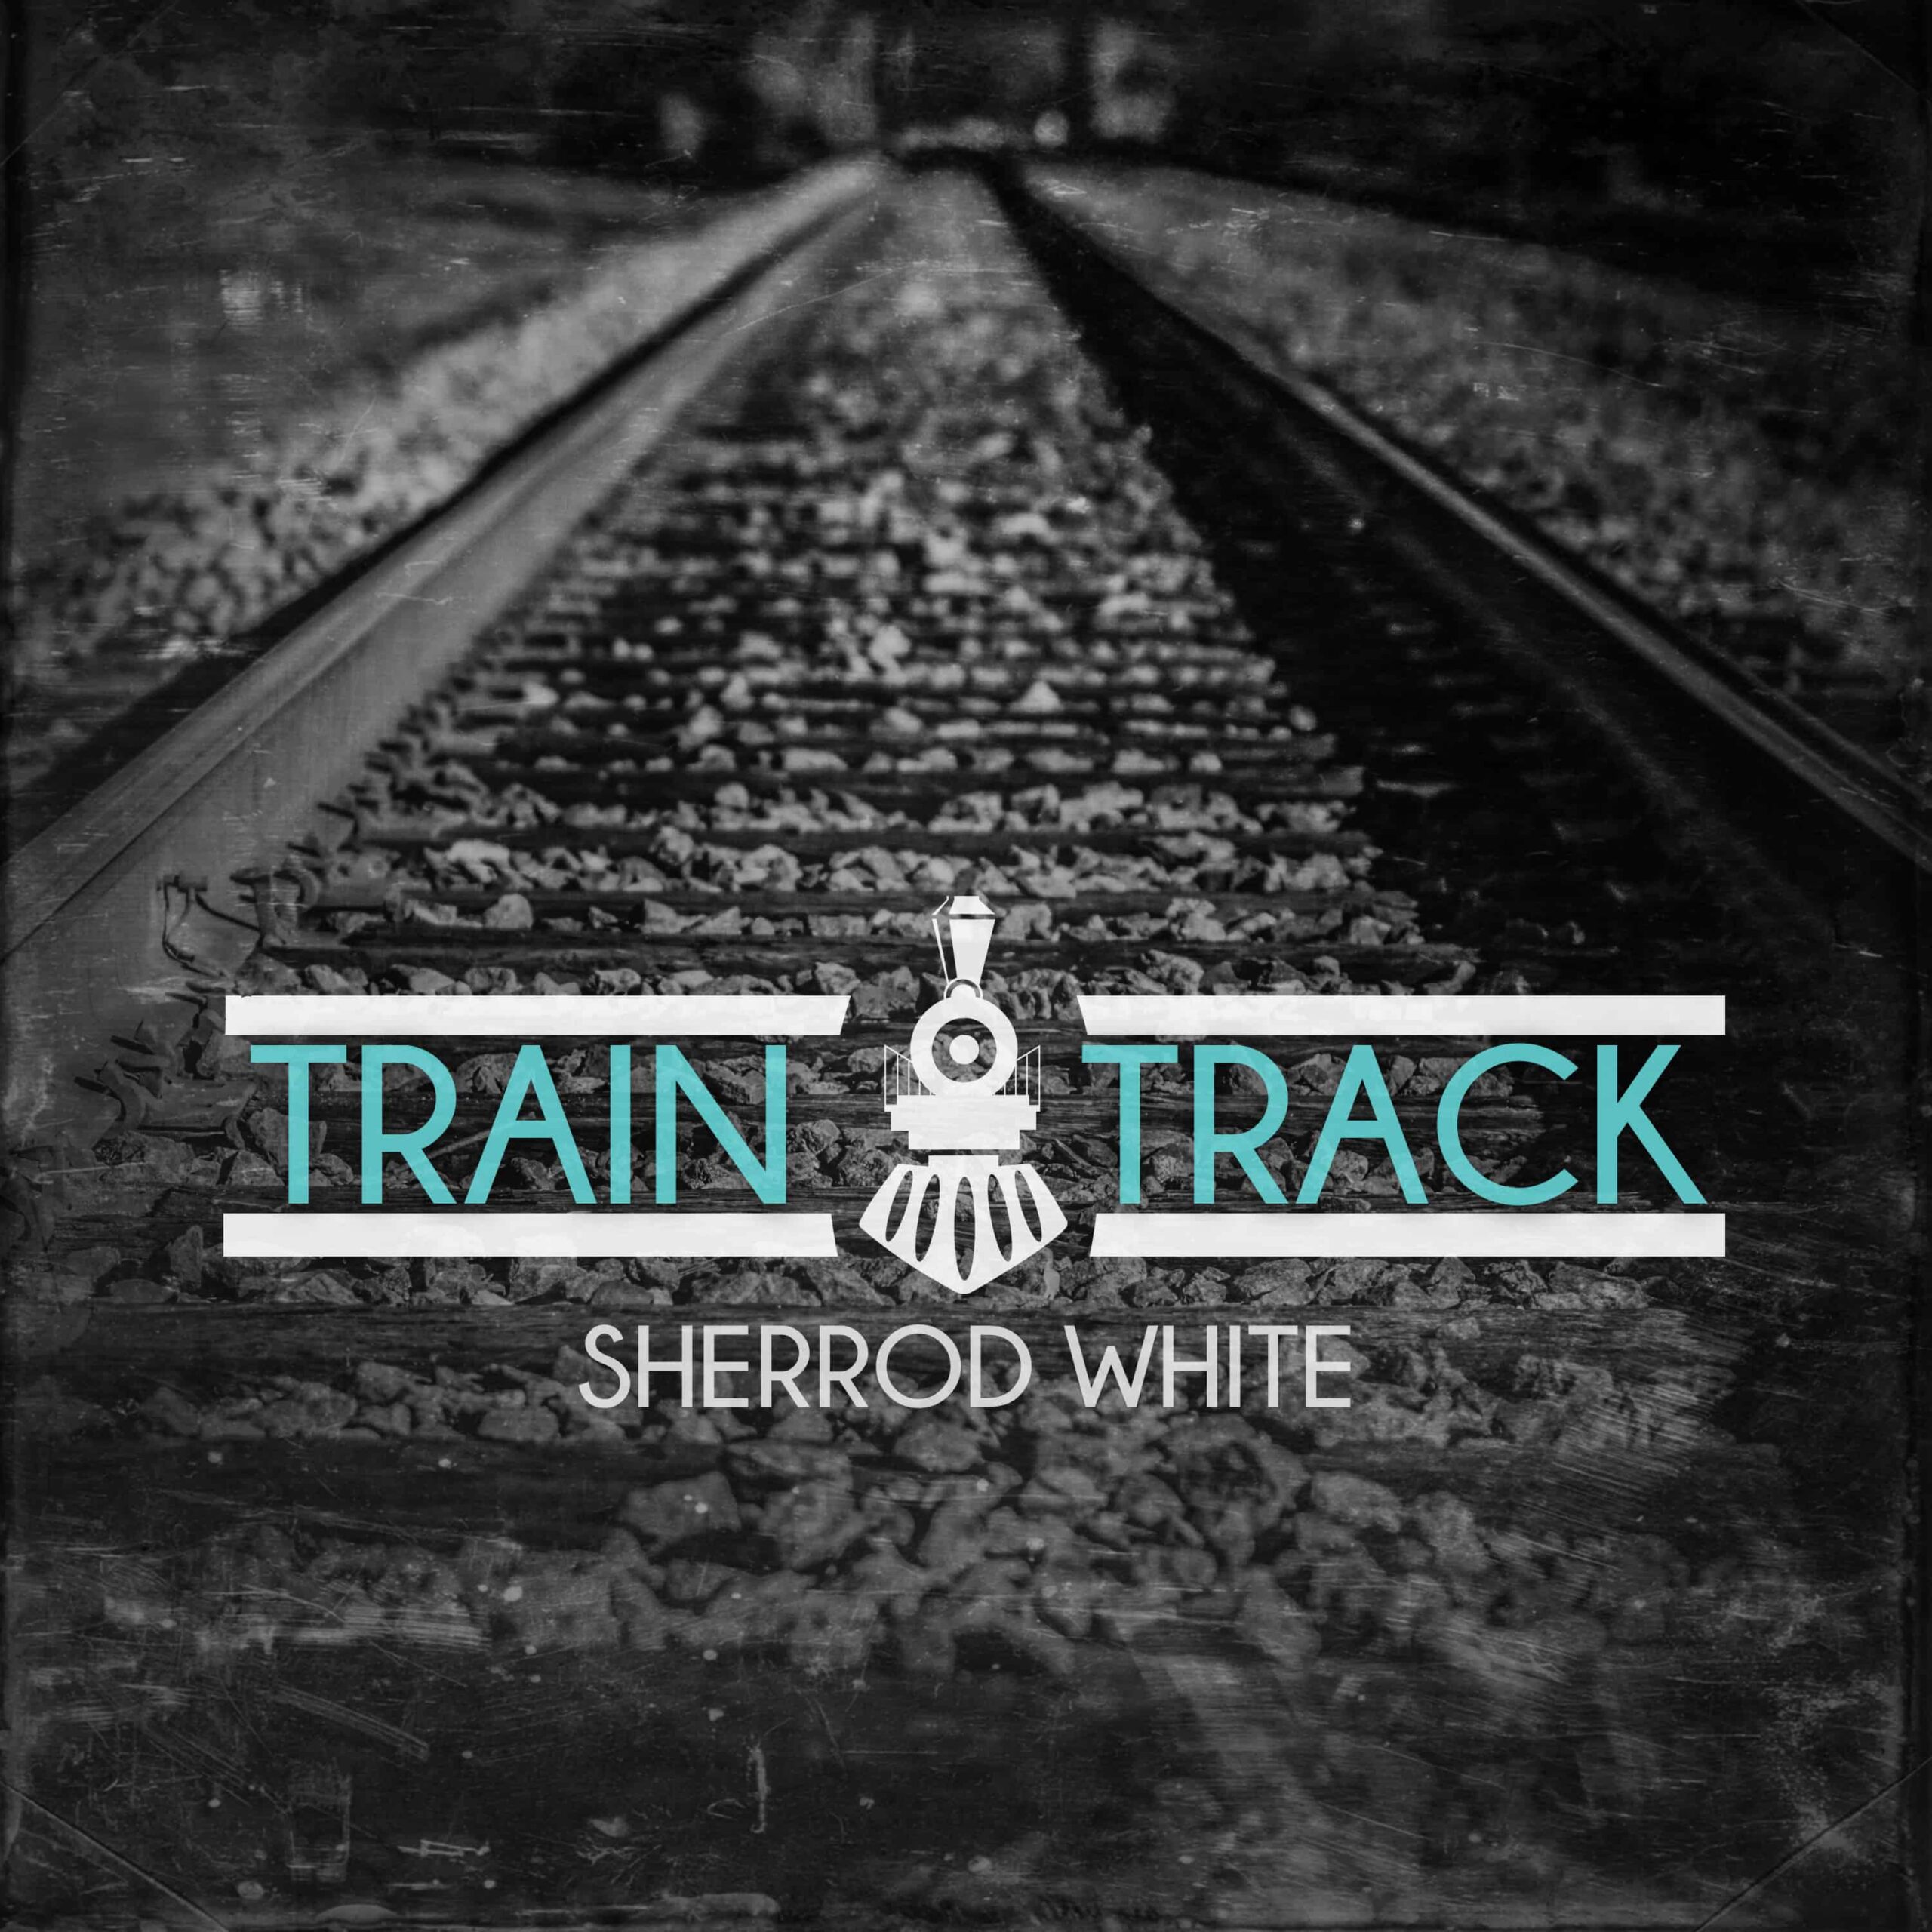 TRAIN-TRACKS-ALBUM-COVER-Official